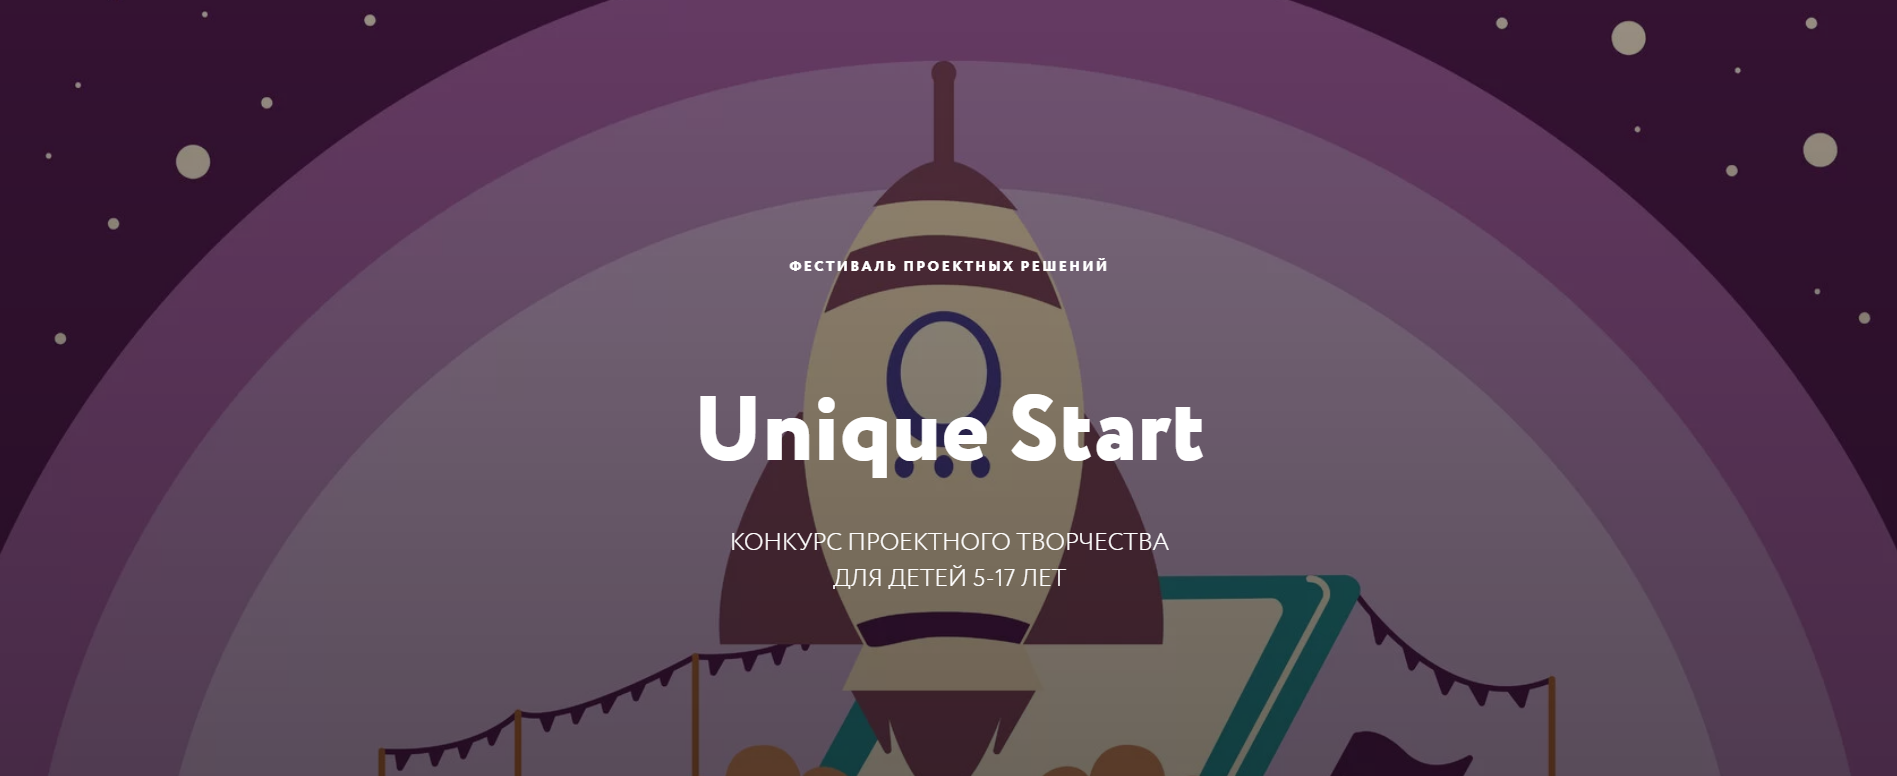 Успейте принять участие в Фестивале проектных решений Unique Start!